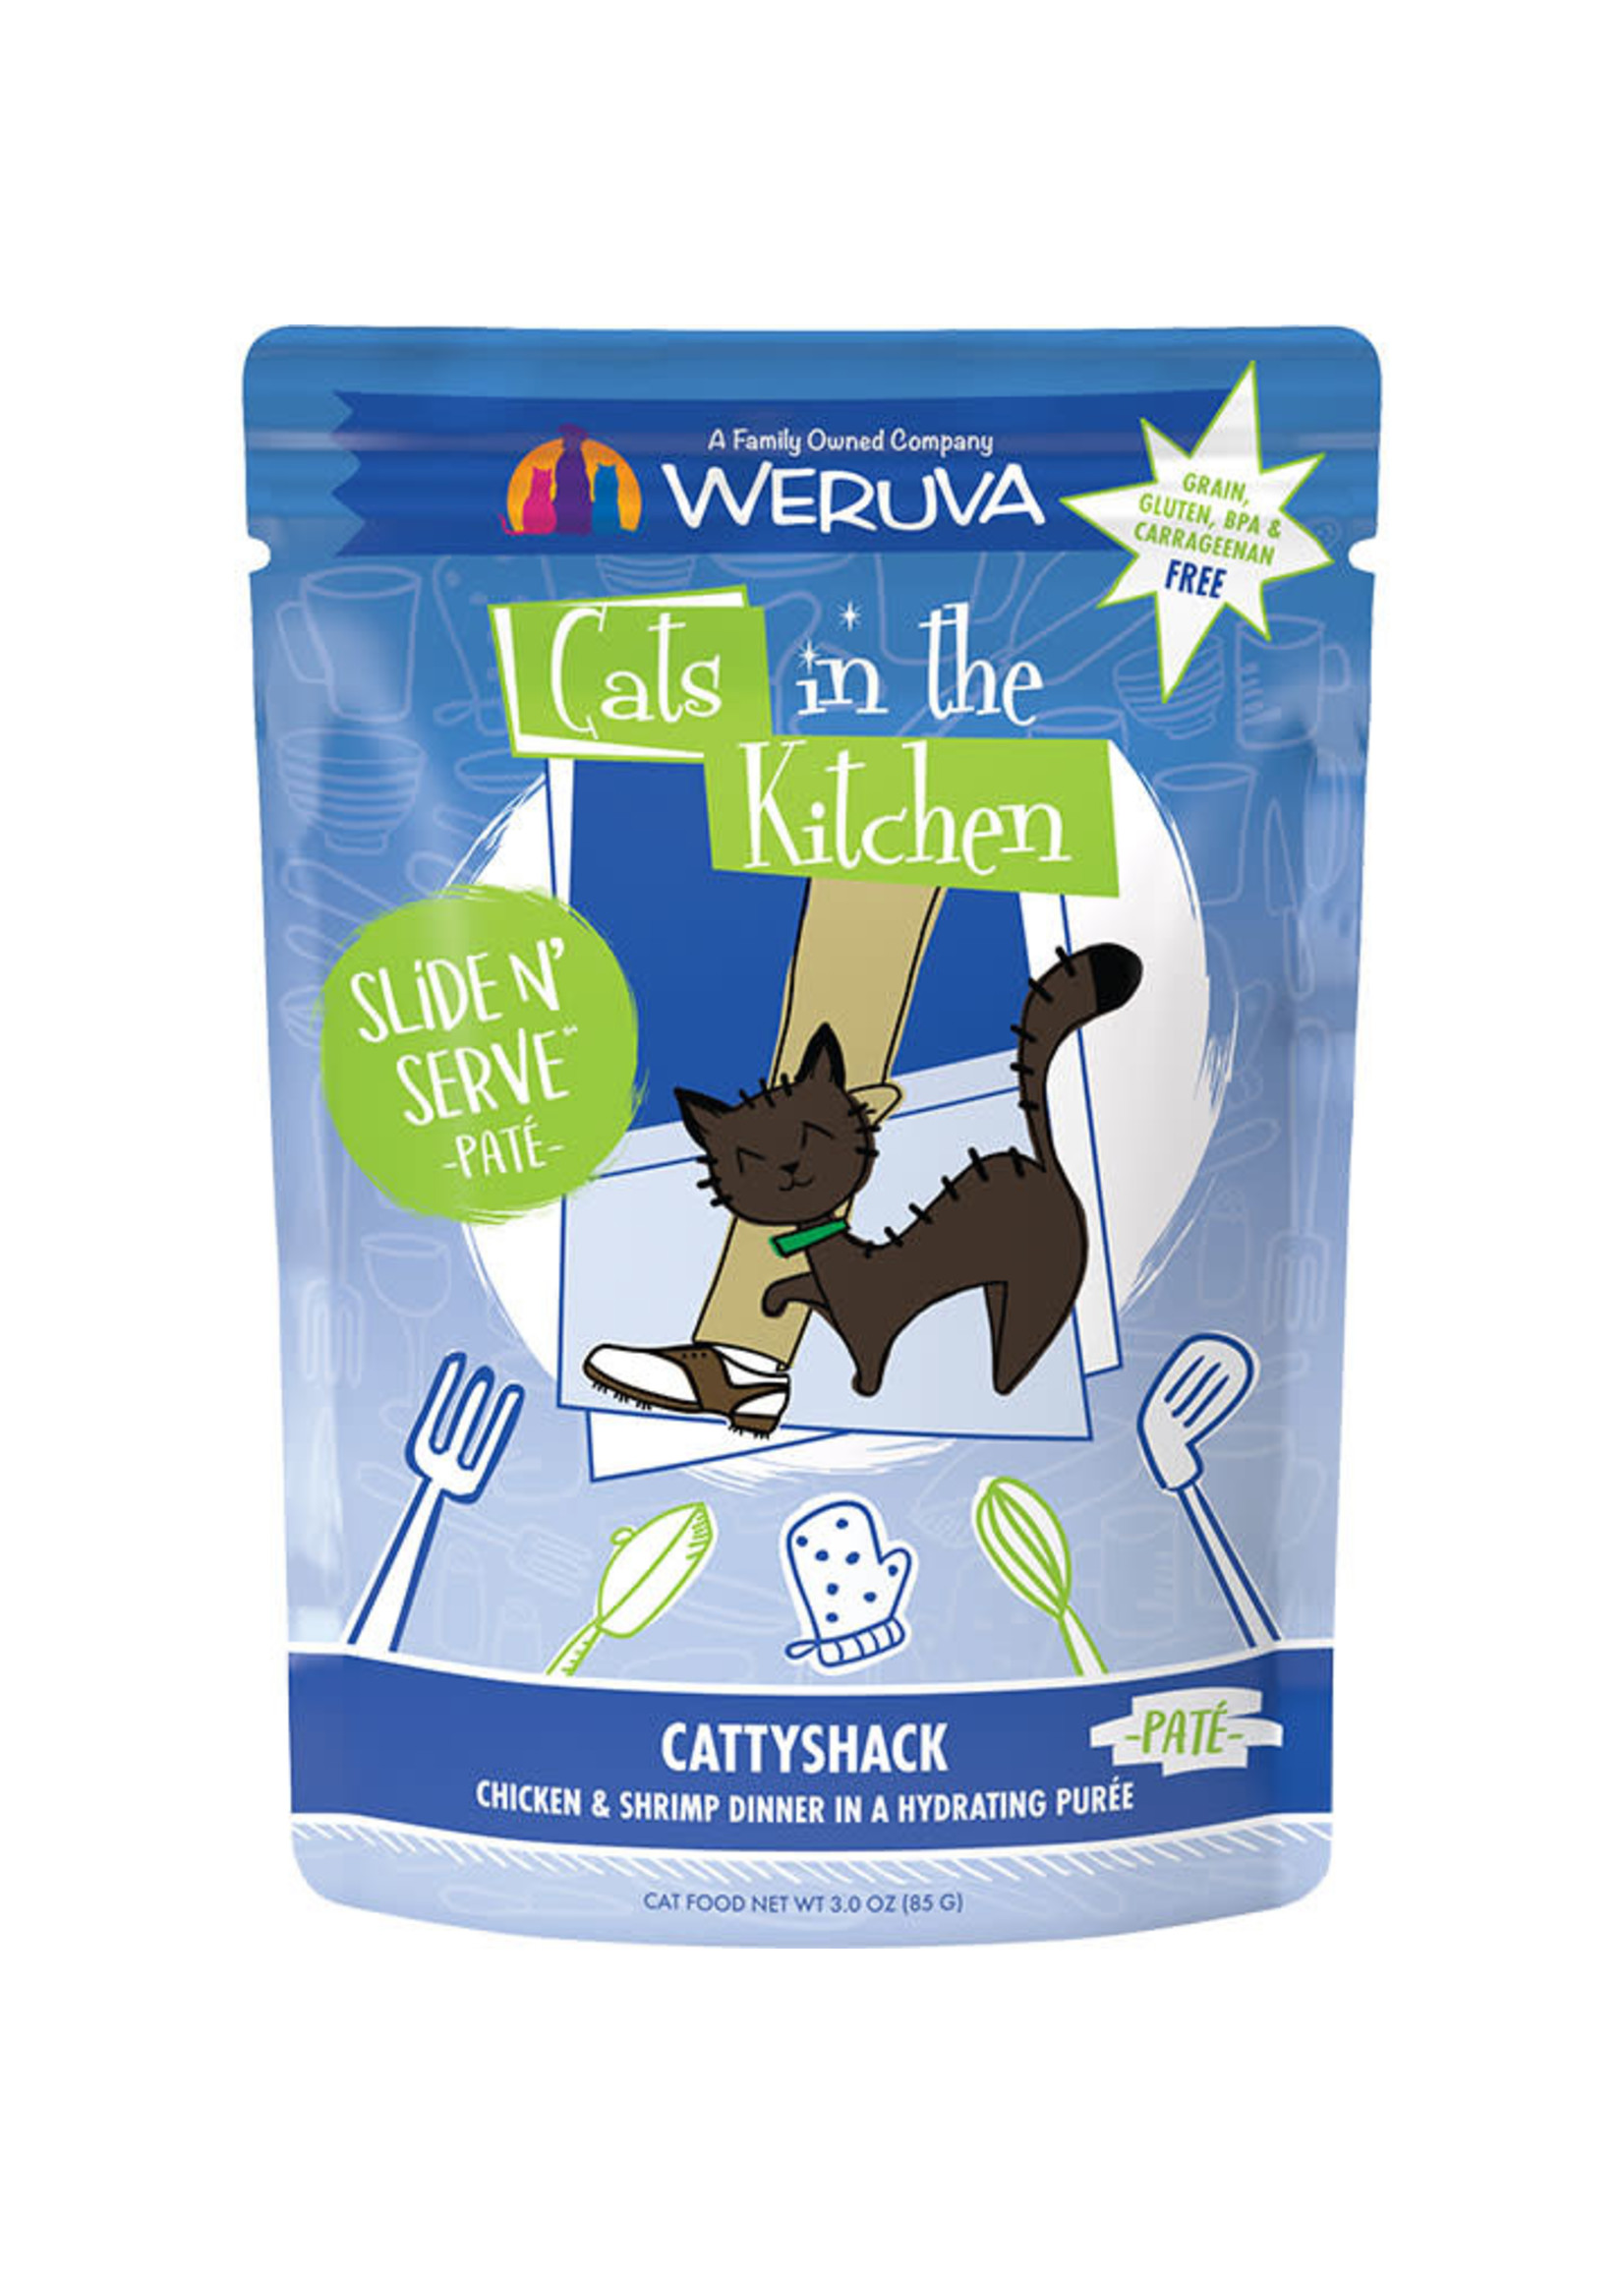 Weruva Weruva Cats in the Kitchen - Cattyshack Chicken & Shrimp 3oz Pouch Cat Food